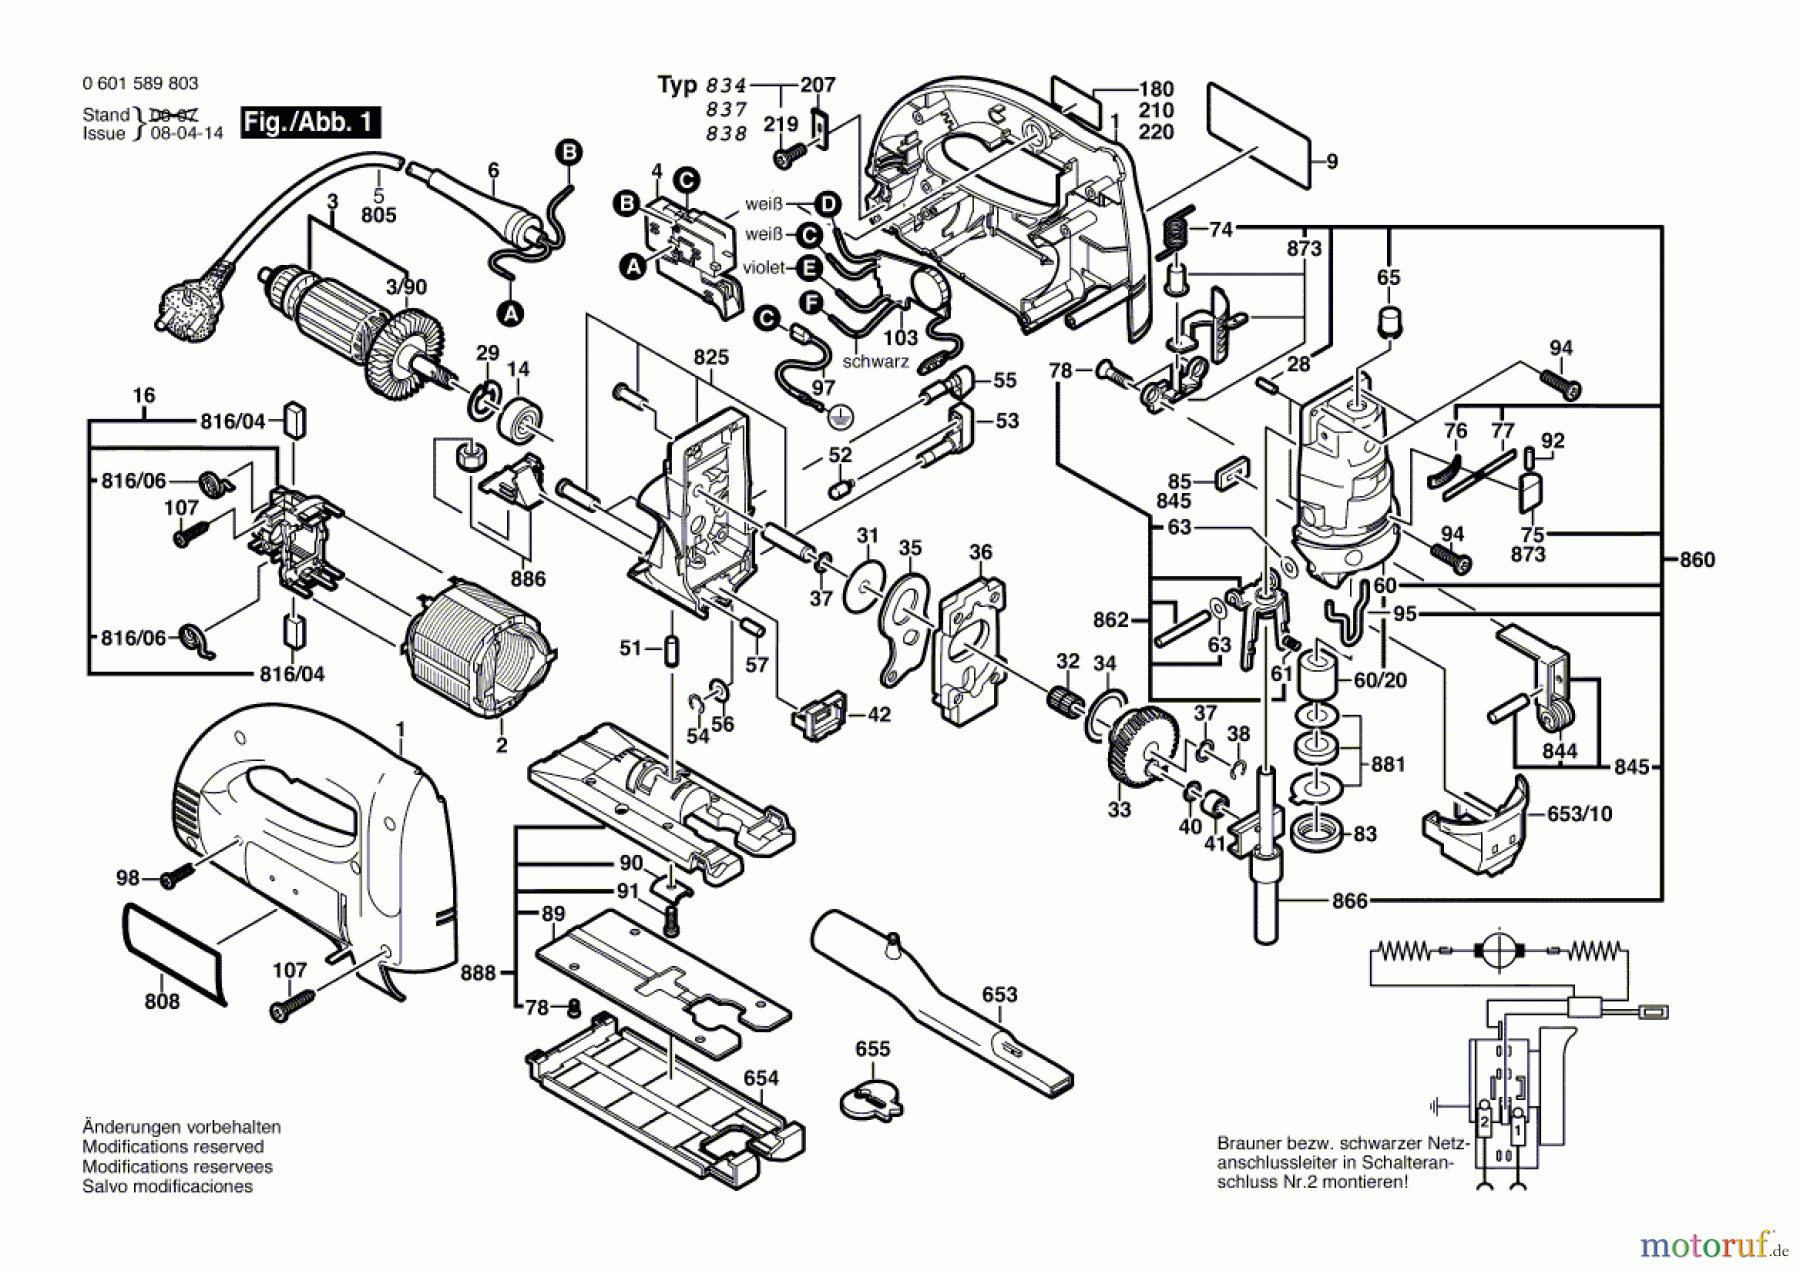  Bosch Werkzeug Stichsäge STP 110-EB Seite 1